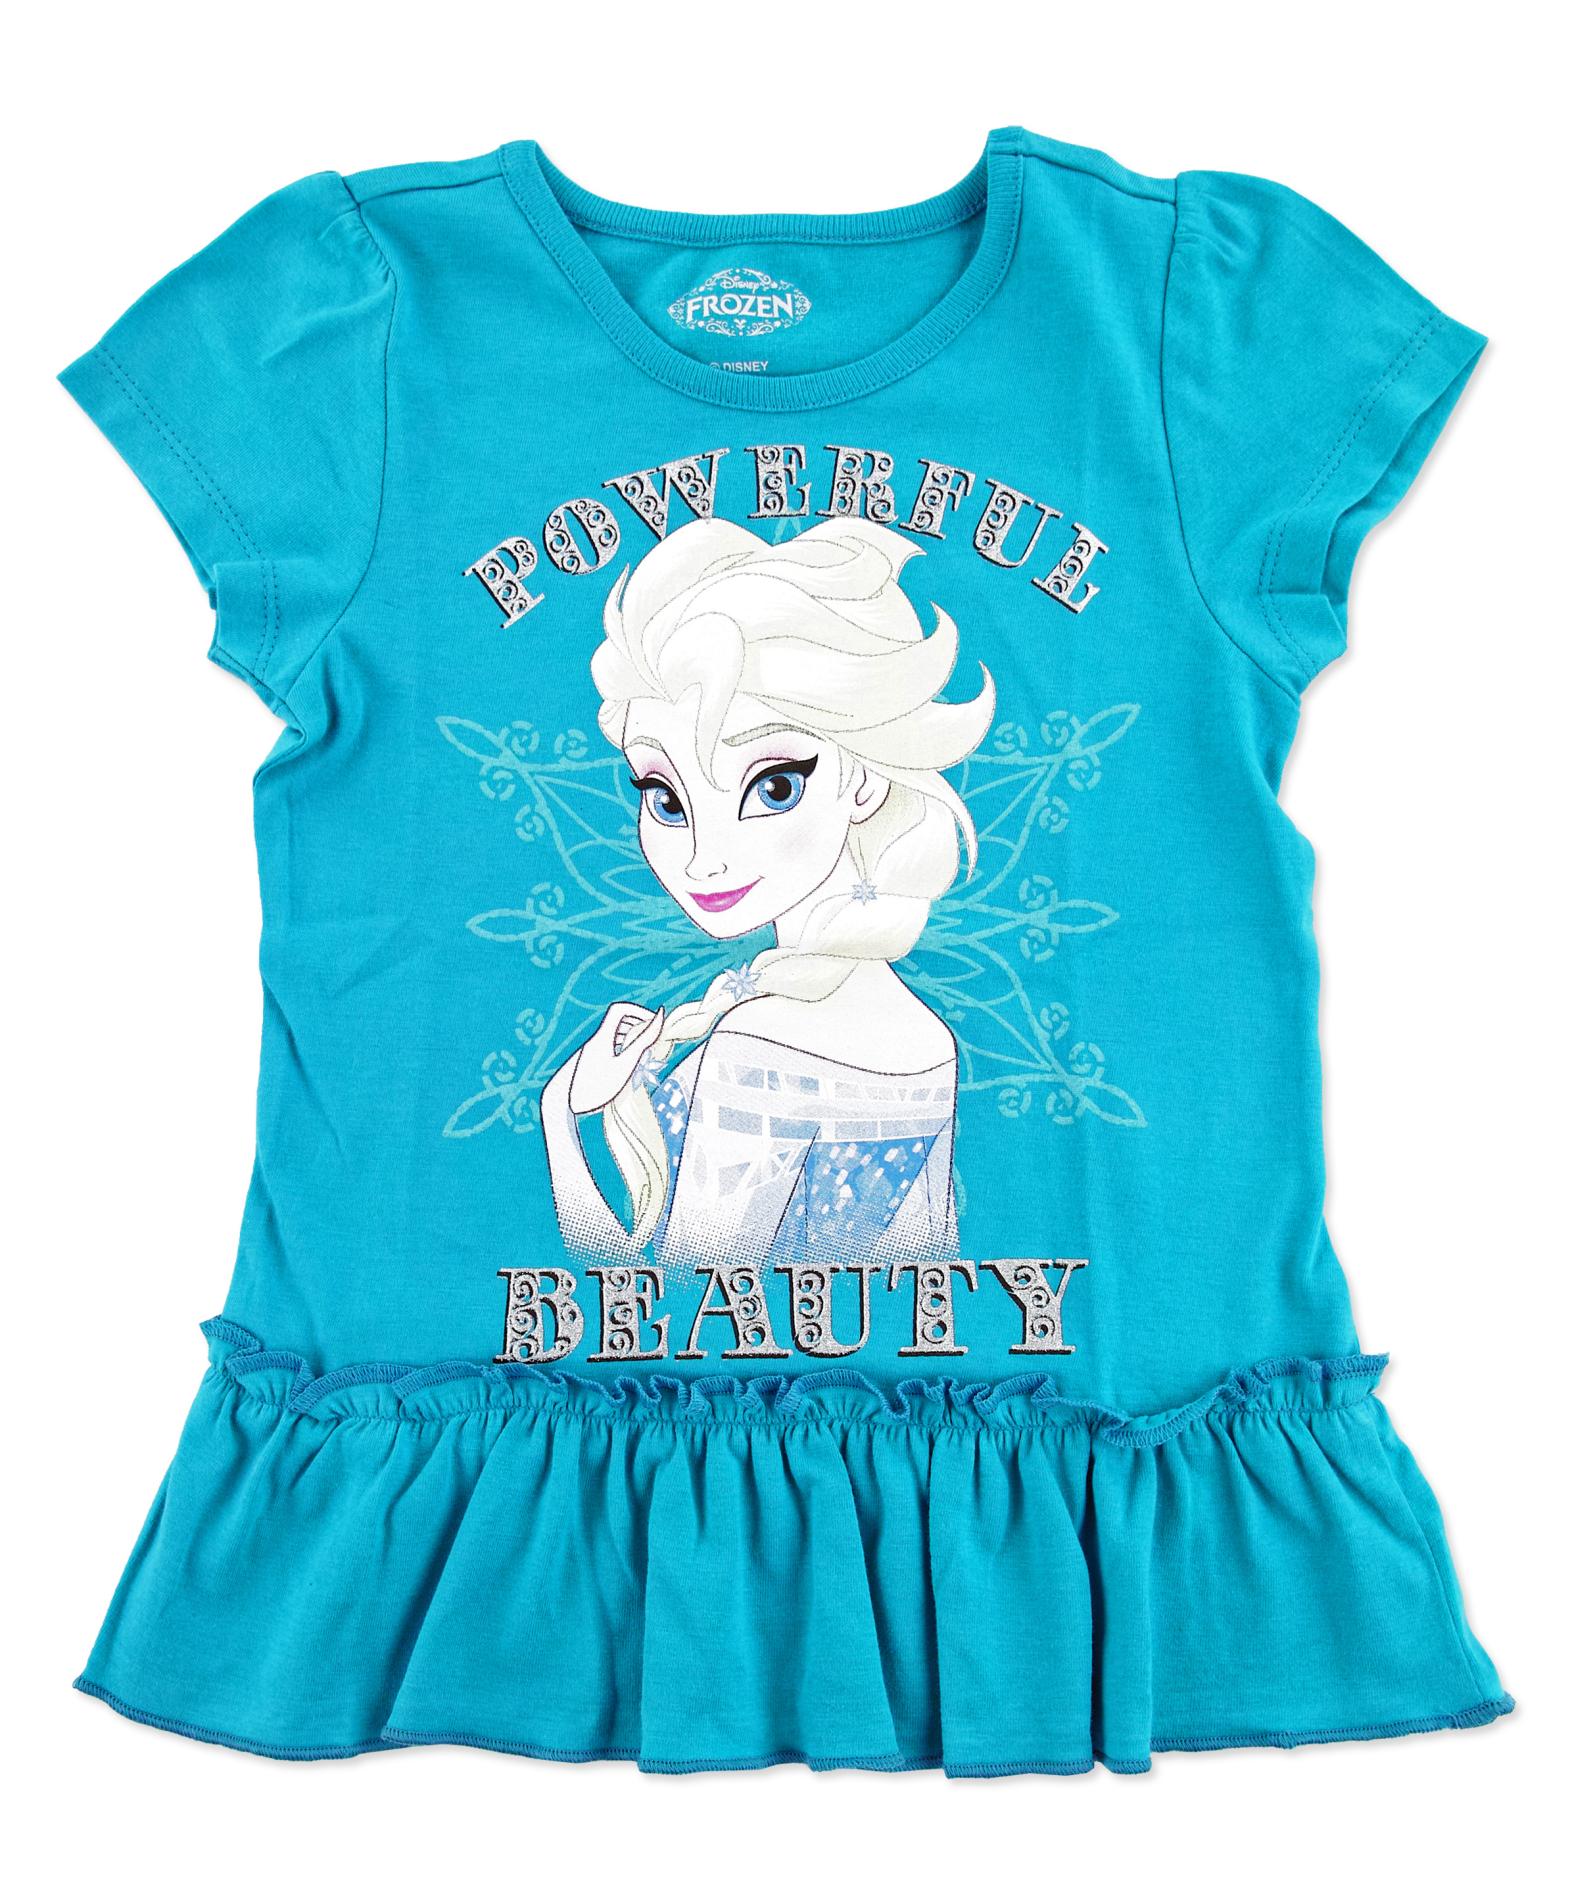 Disney Frozen Girl's Top - Queen Elsa